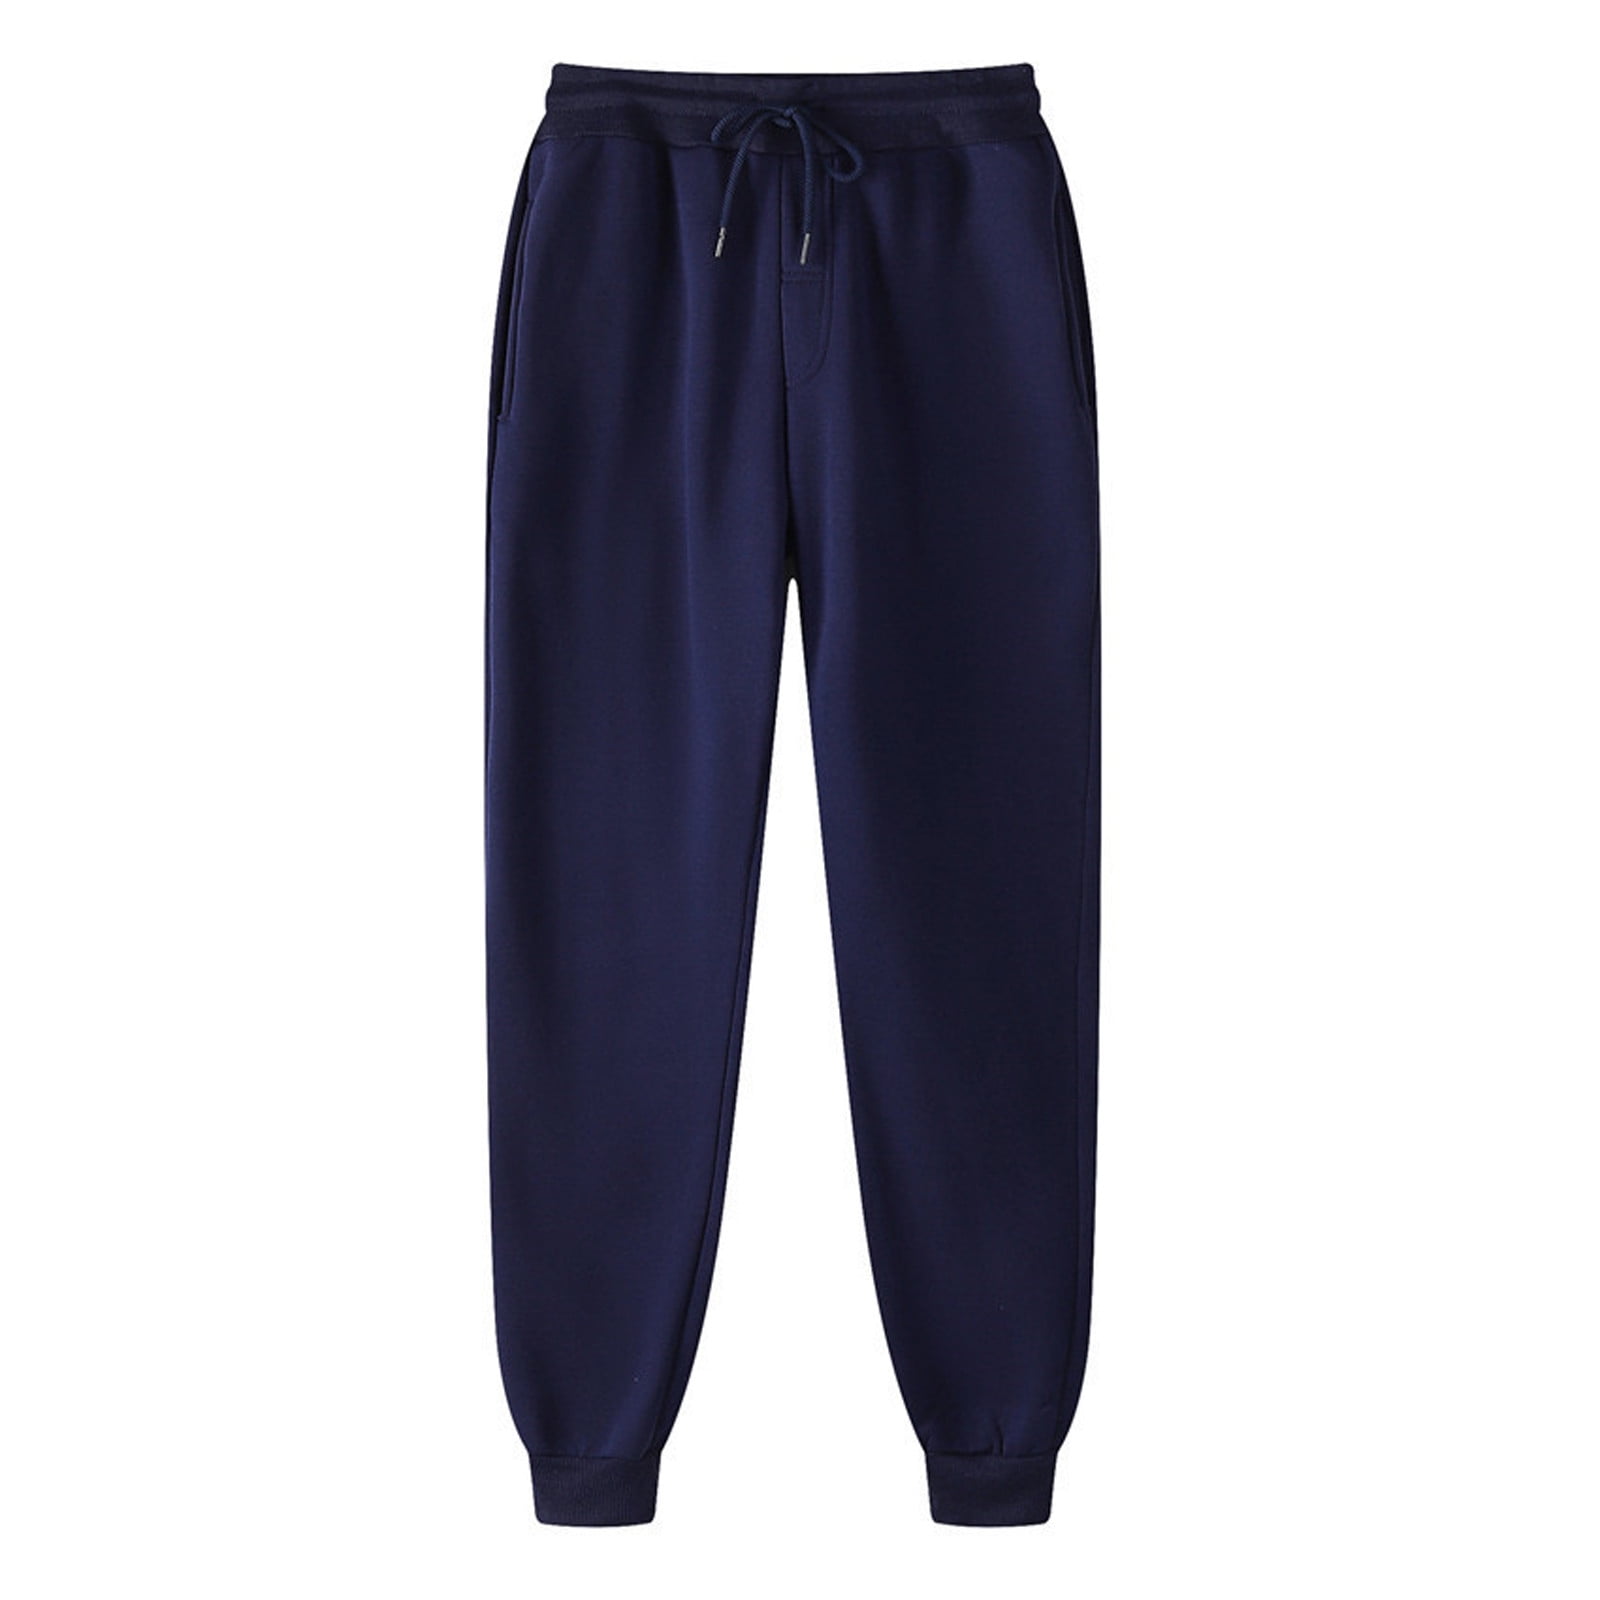 Juebong Men's Sweatpants, Best Sweatpants for Men, Men's Athletic Lounge  Pants with Cinched Cuffs,Black,XXL